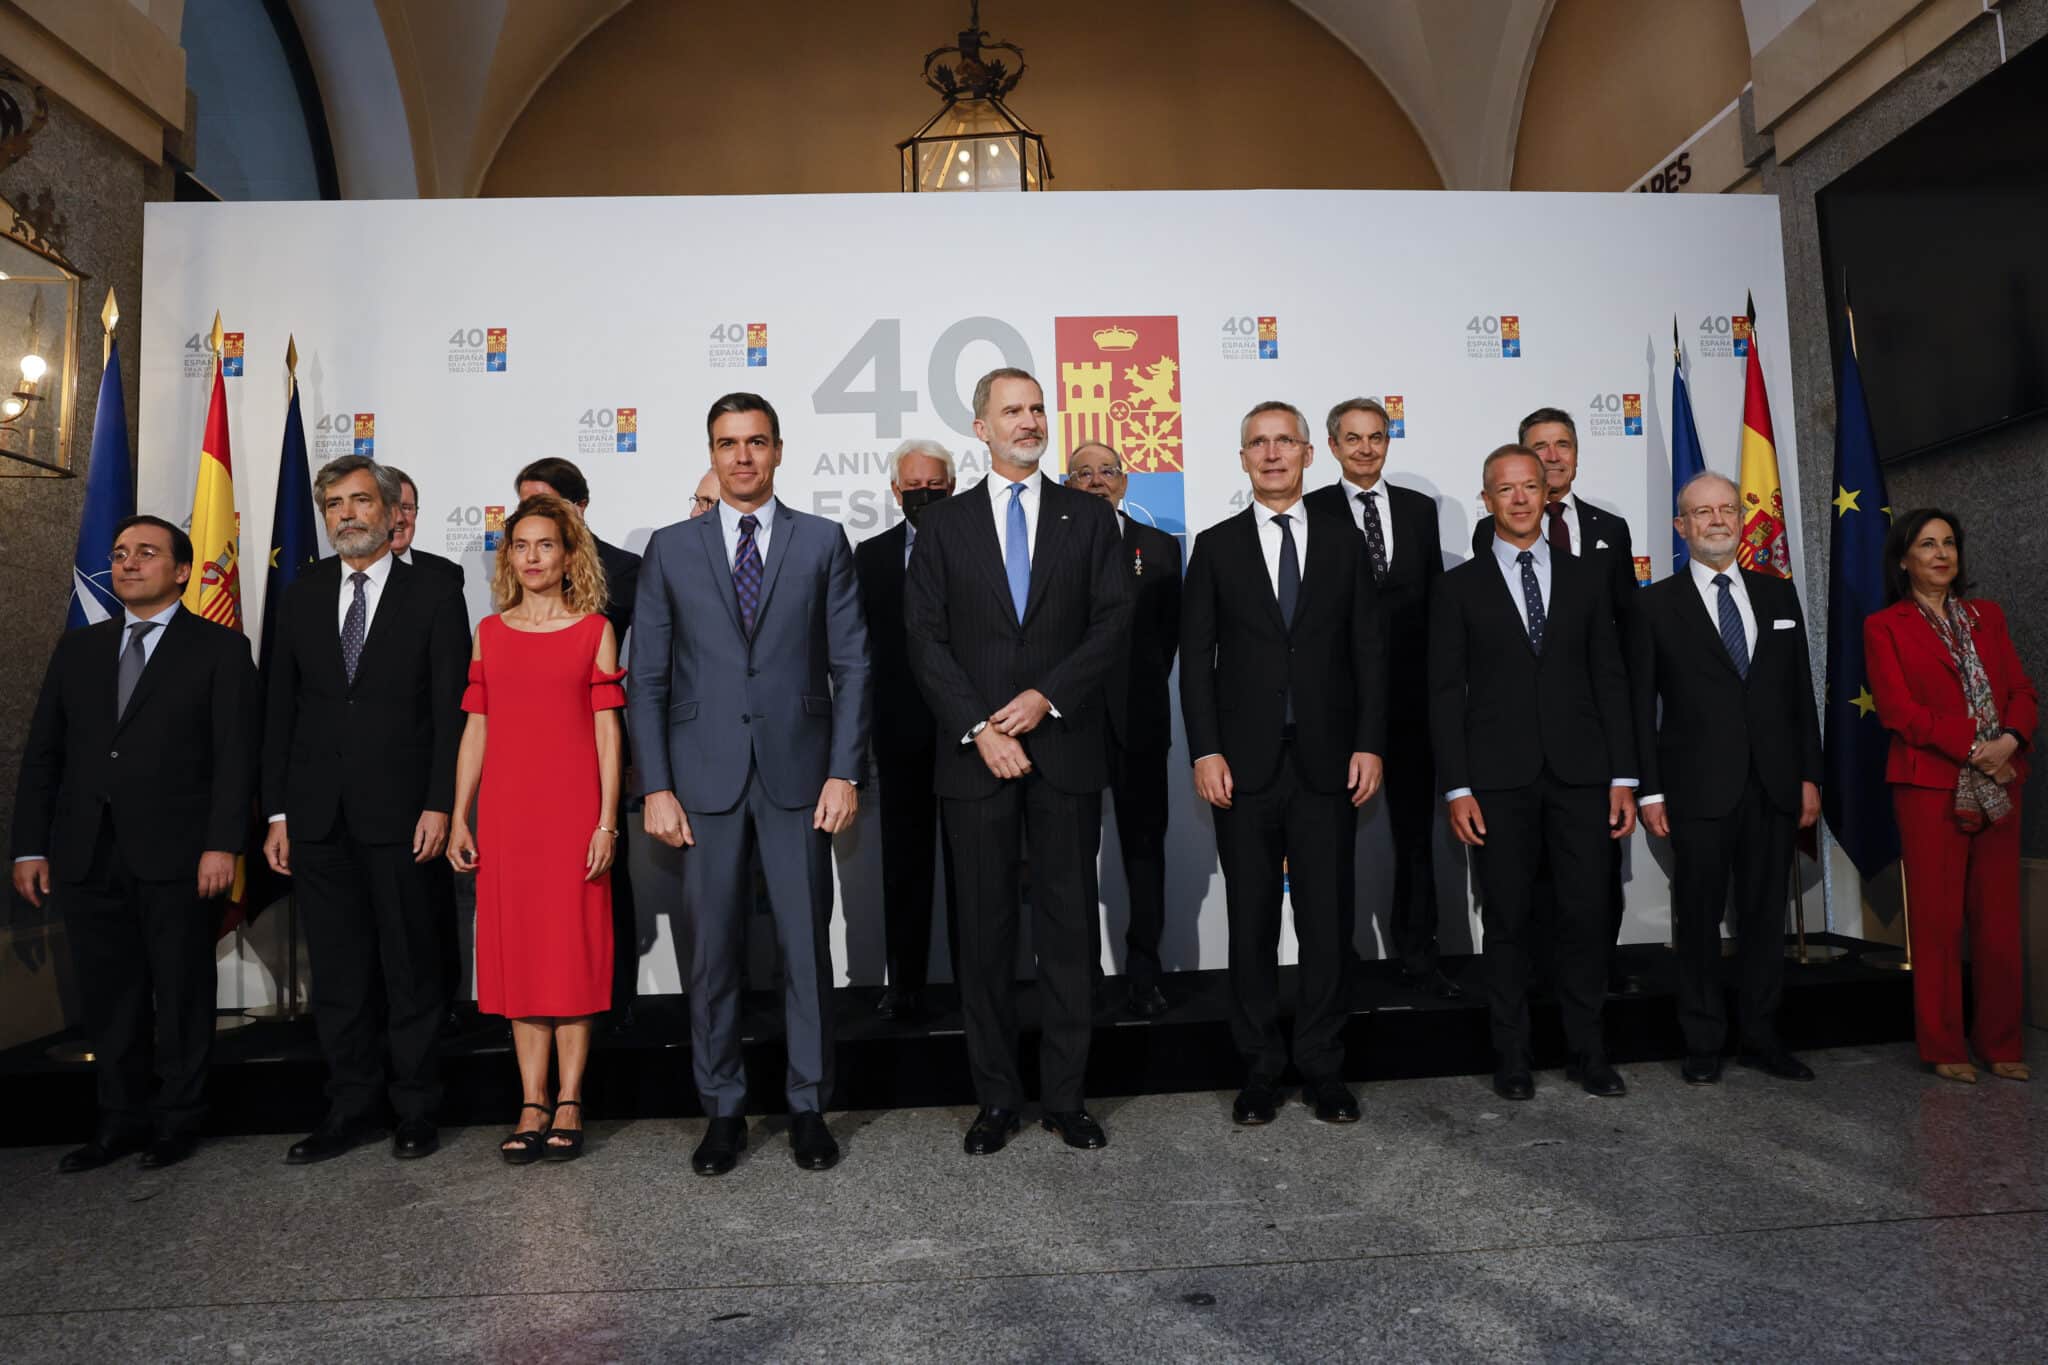 El secretario general de la OTAN, Jens Stoltenberg junto con el presidente del Gobierno, Pedro Sánchez, el rey Felipe VI y otras autoridades este lunes en Madrid asisten al acto de conmemoración por el 40 aniversario del ingreso de España en la OTAN celebrado en el Teatro Real.